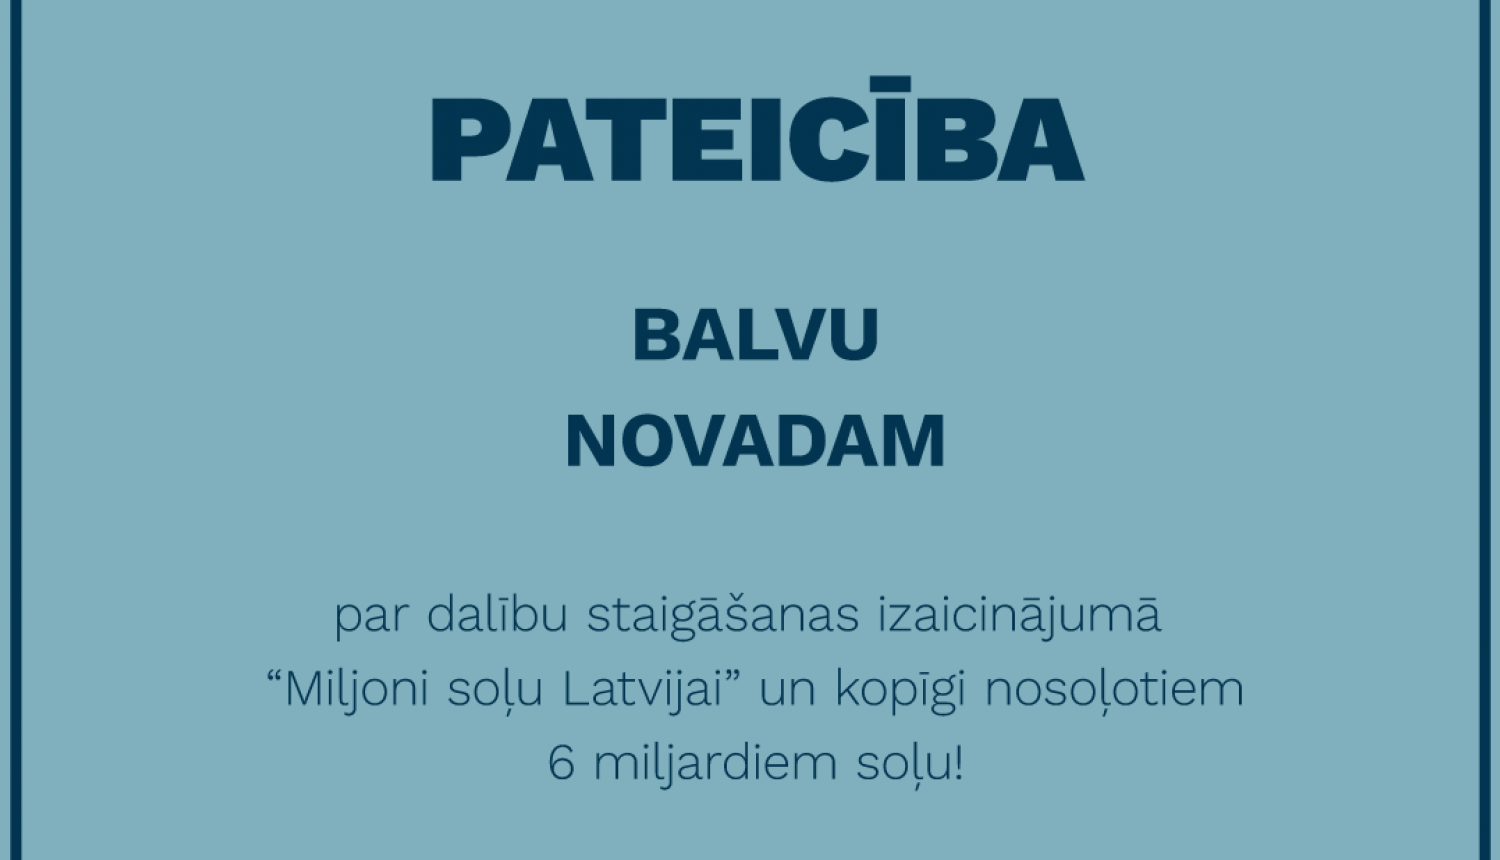 Staigāšanas izaicinājums "Miljoni soļu Latvijai!" ir noslēdzies